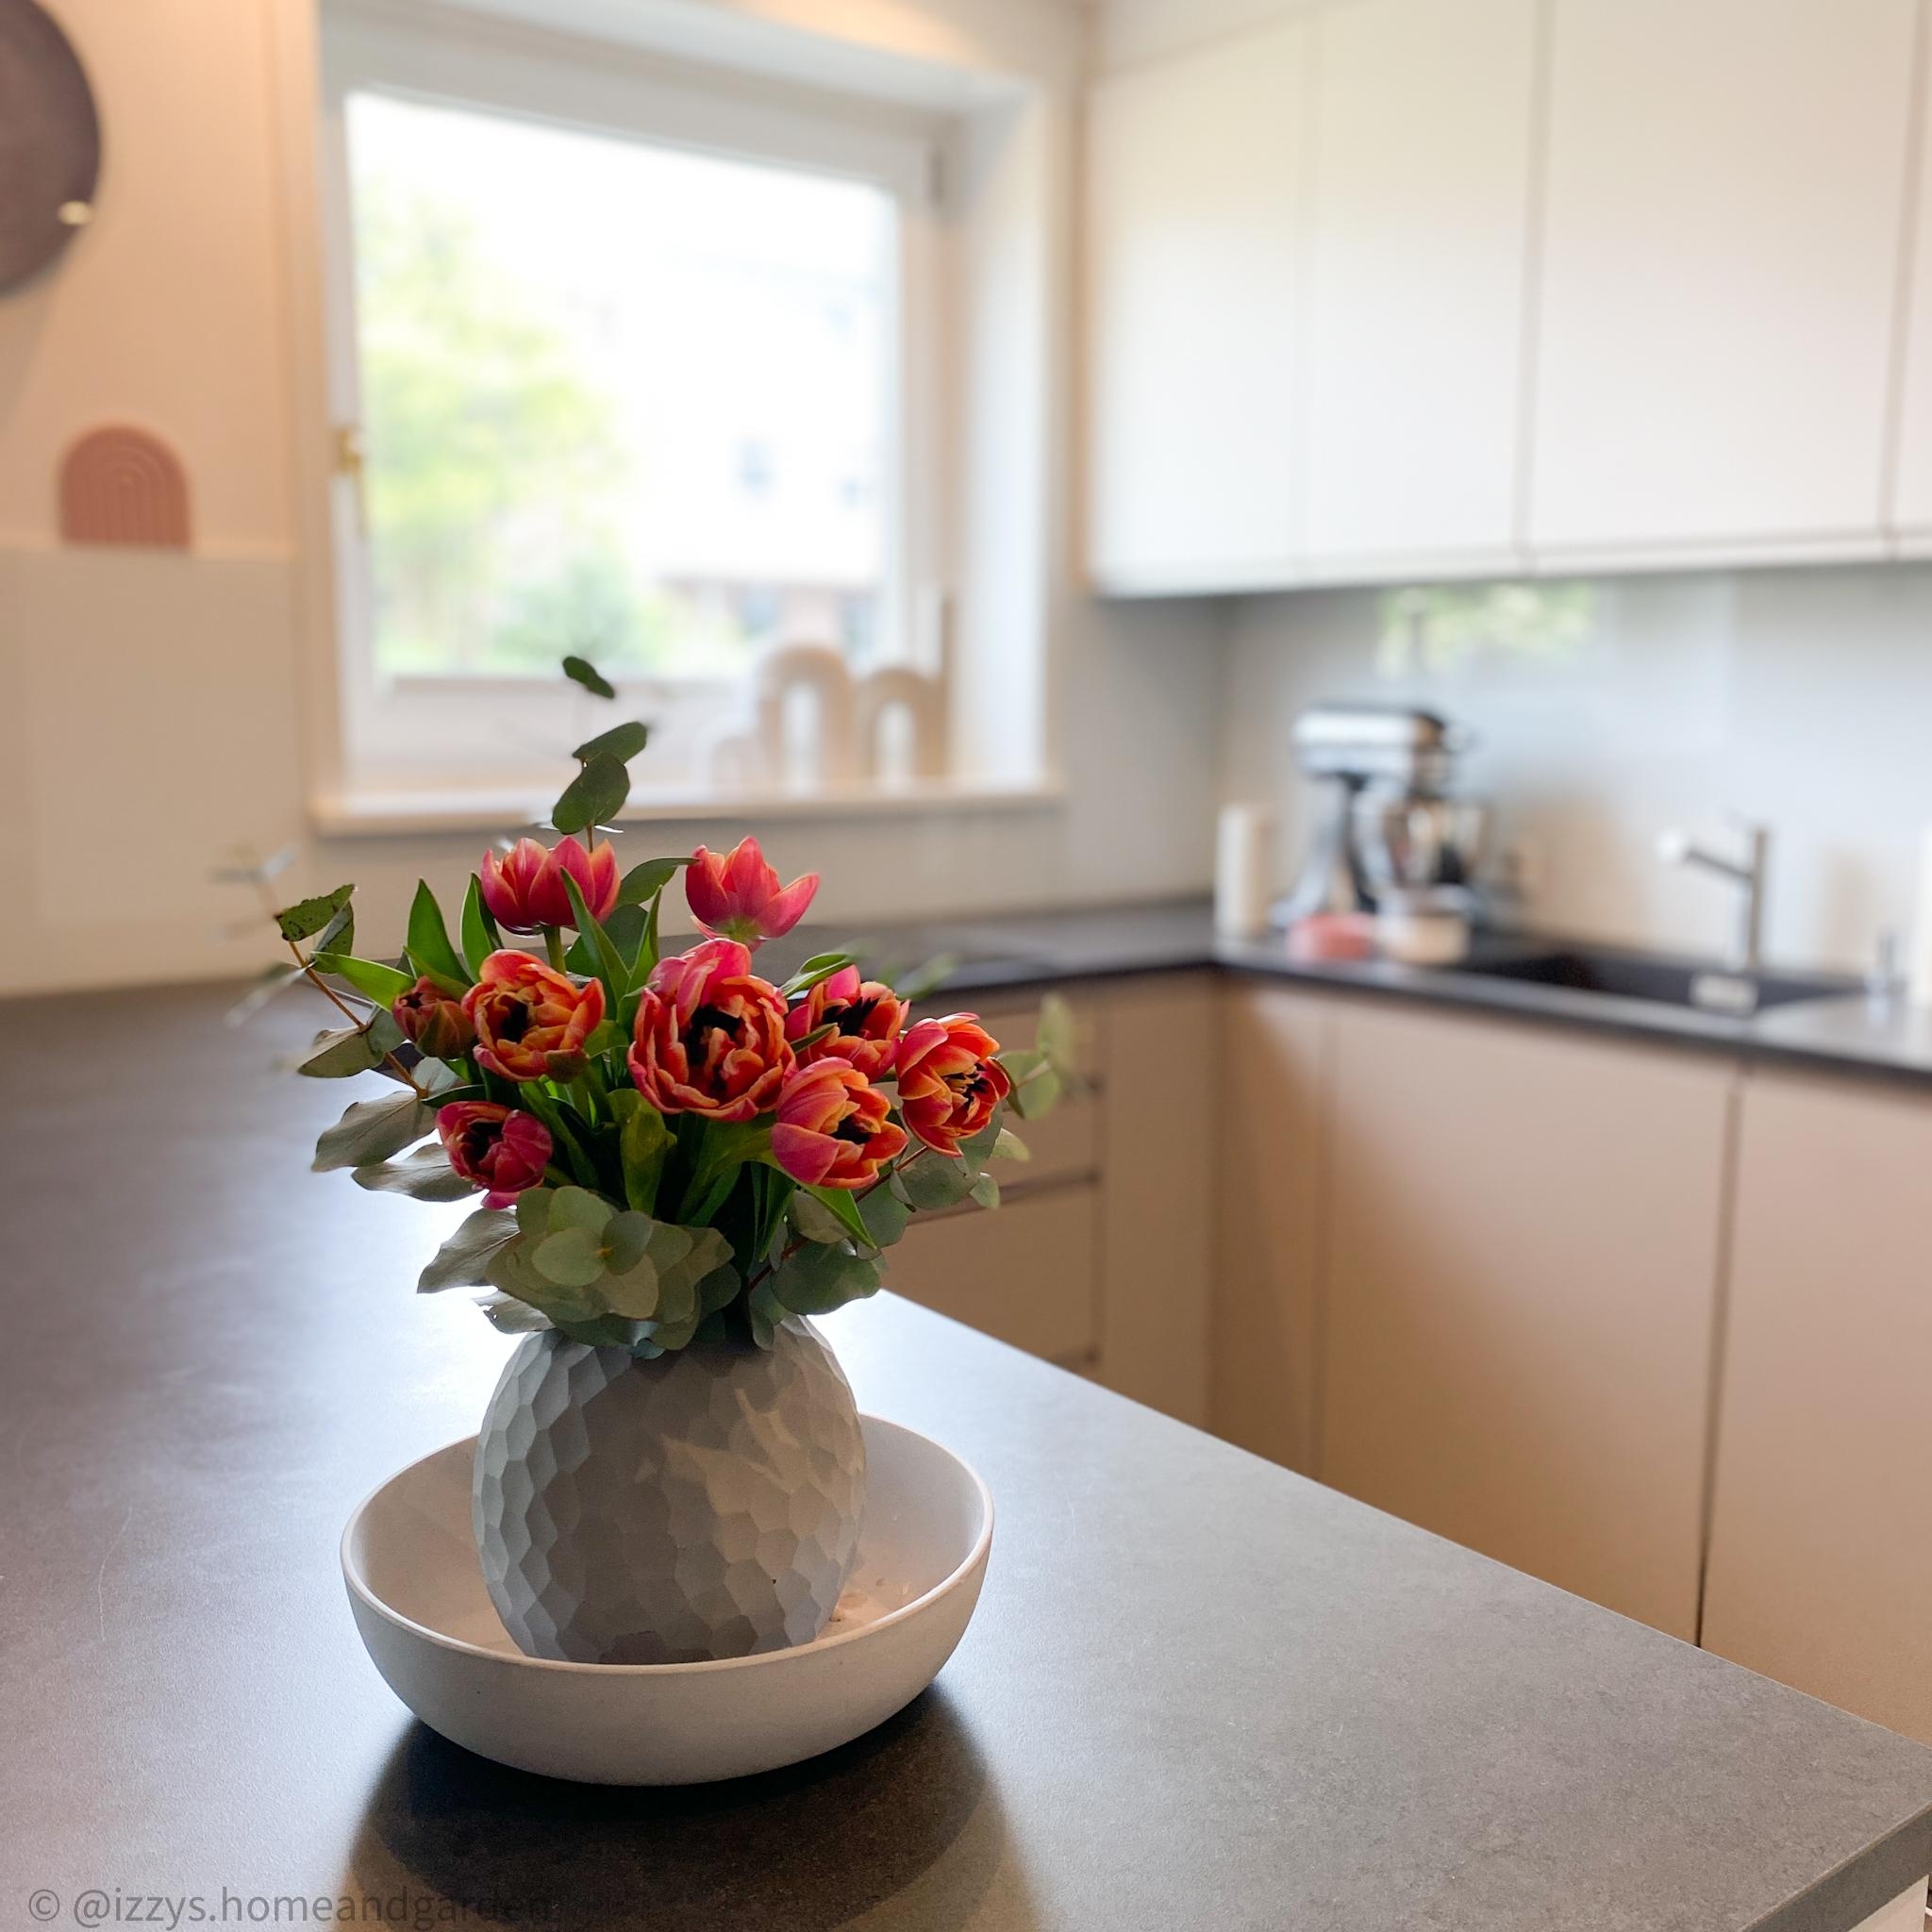 #tulpen #küche #kücheninspiration #solebich #blumenstrauß #frischeblumen #kitchen